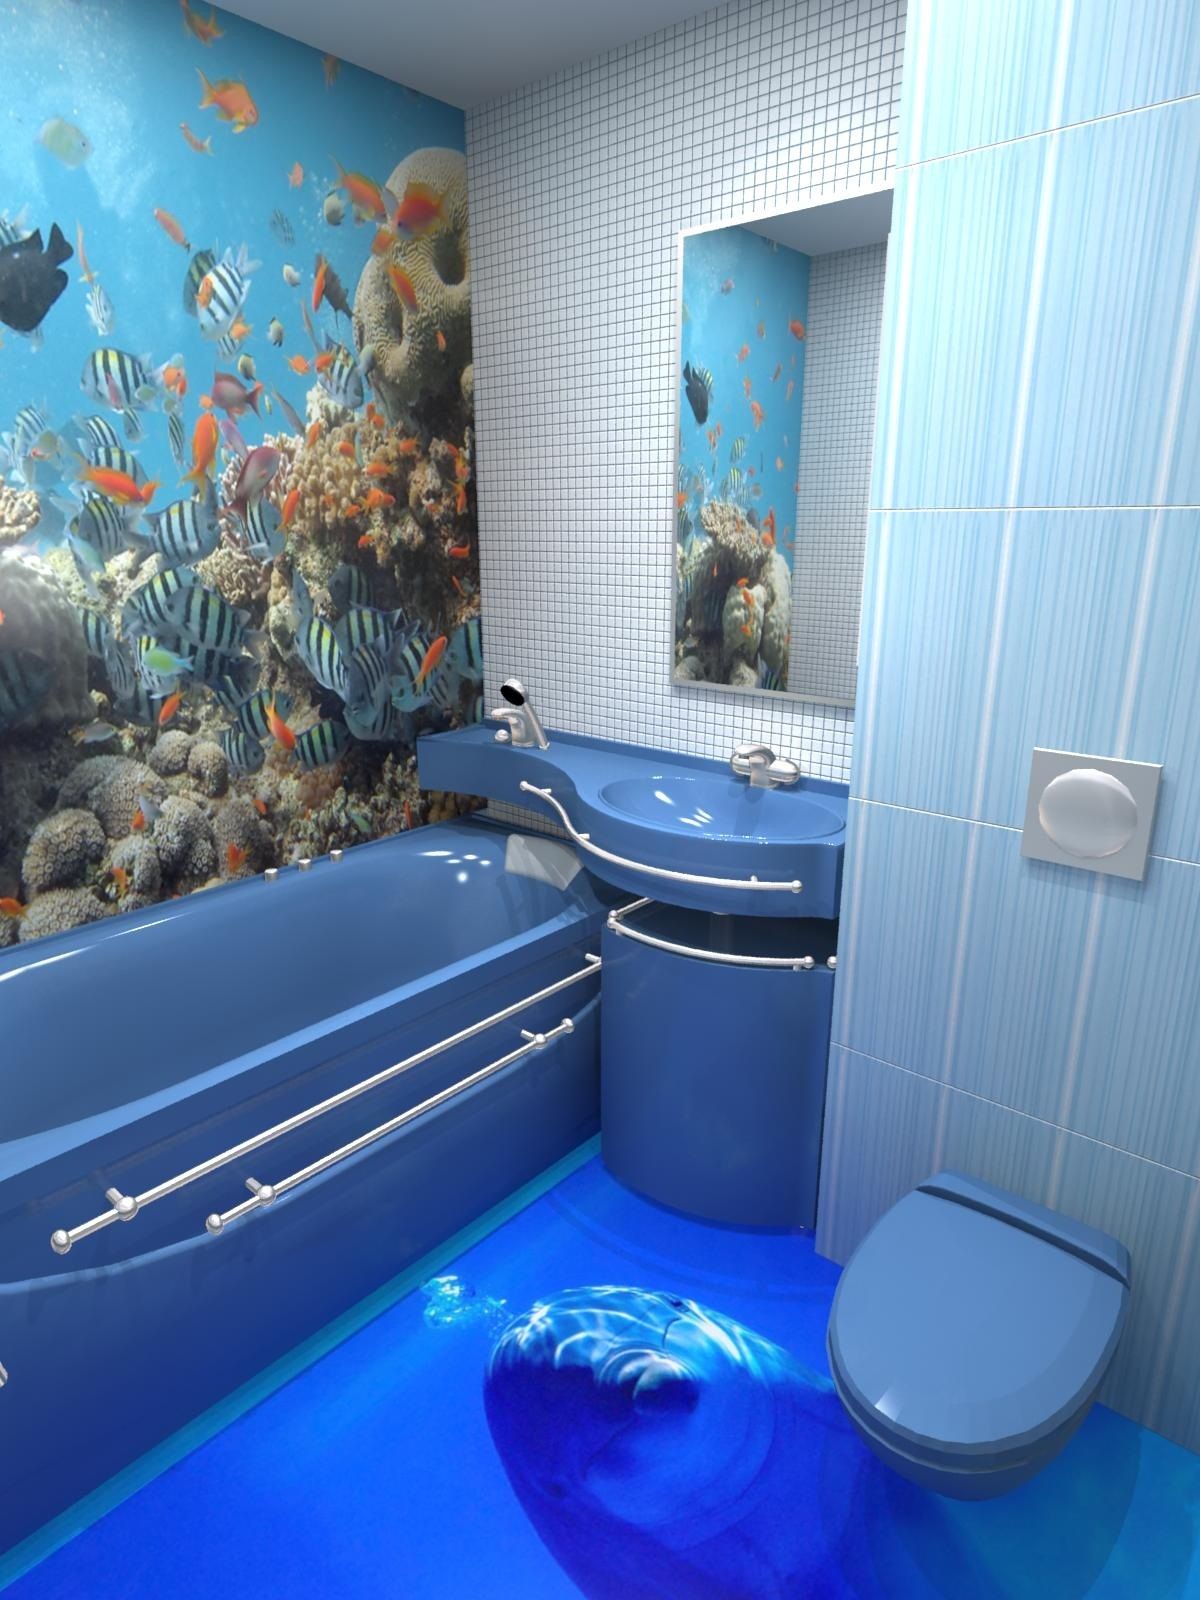 Голубая плитка в дизайне ванной